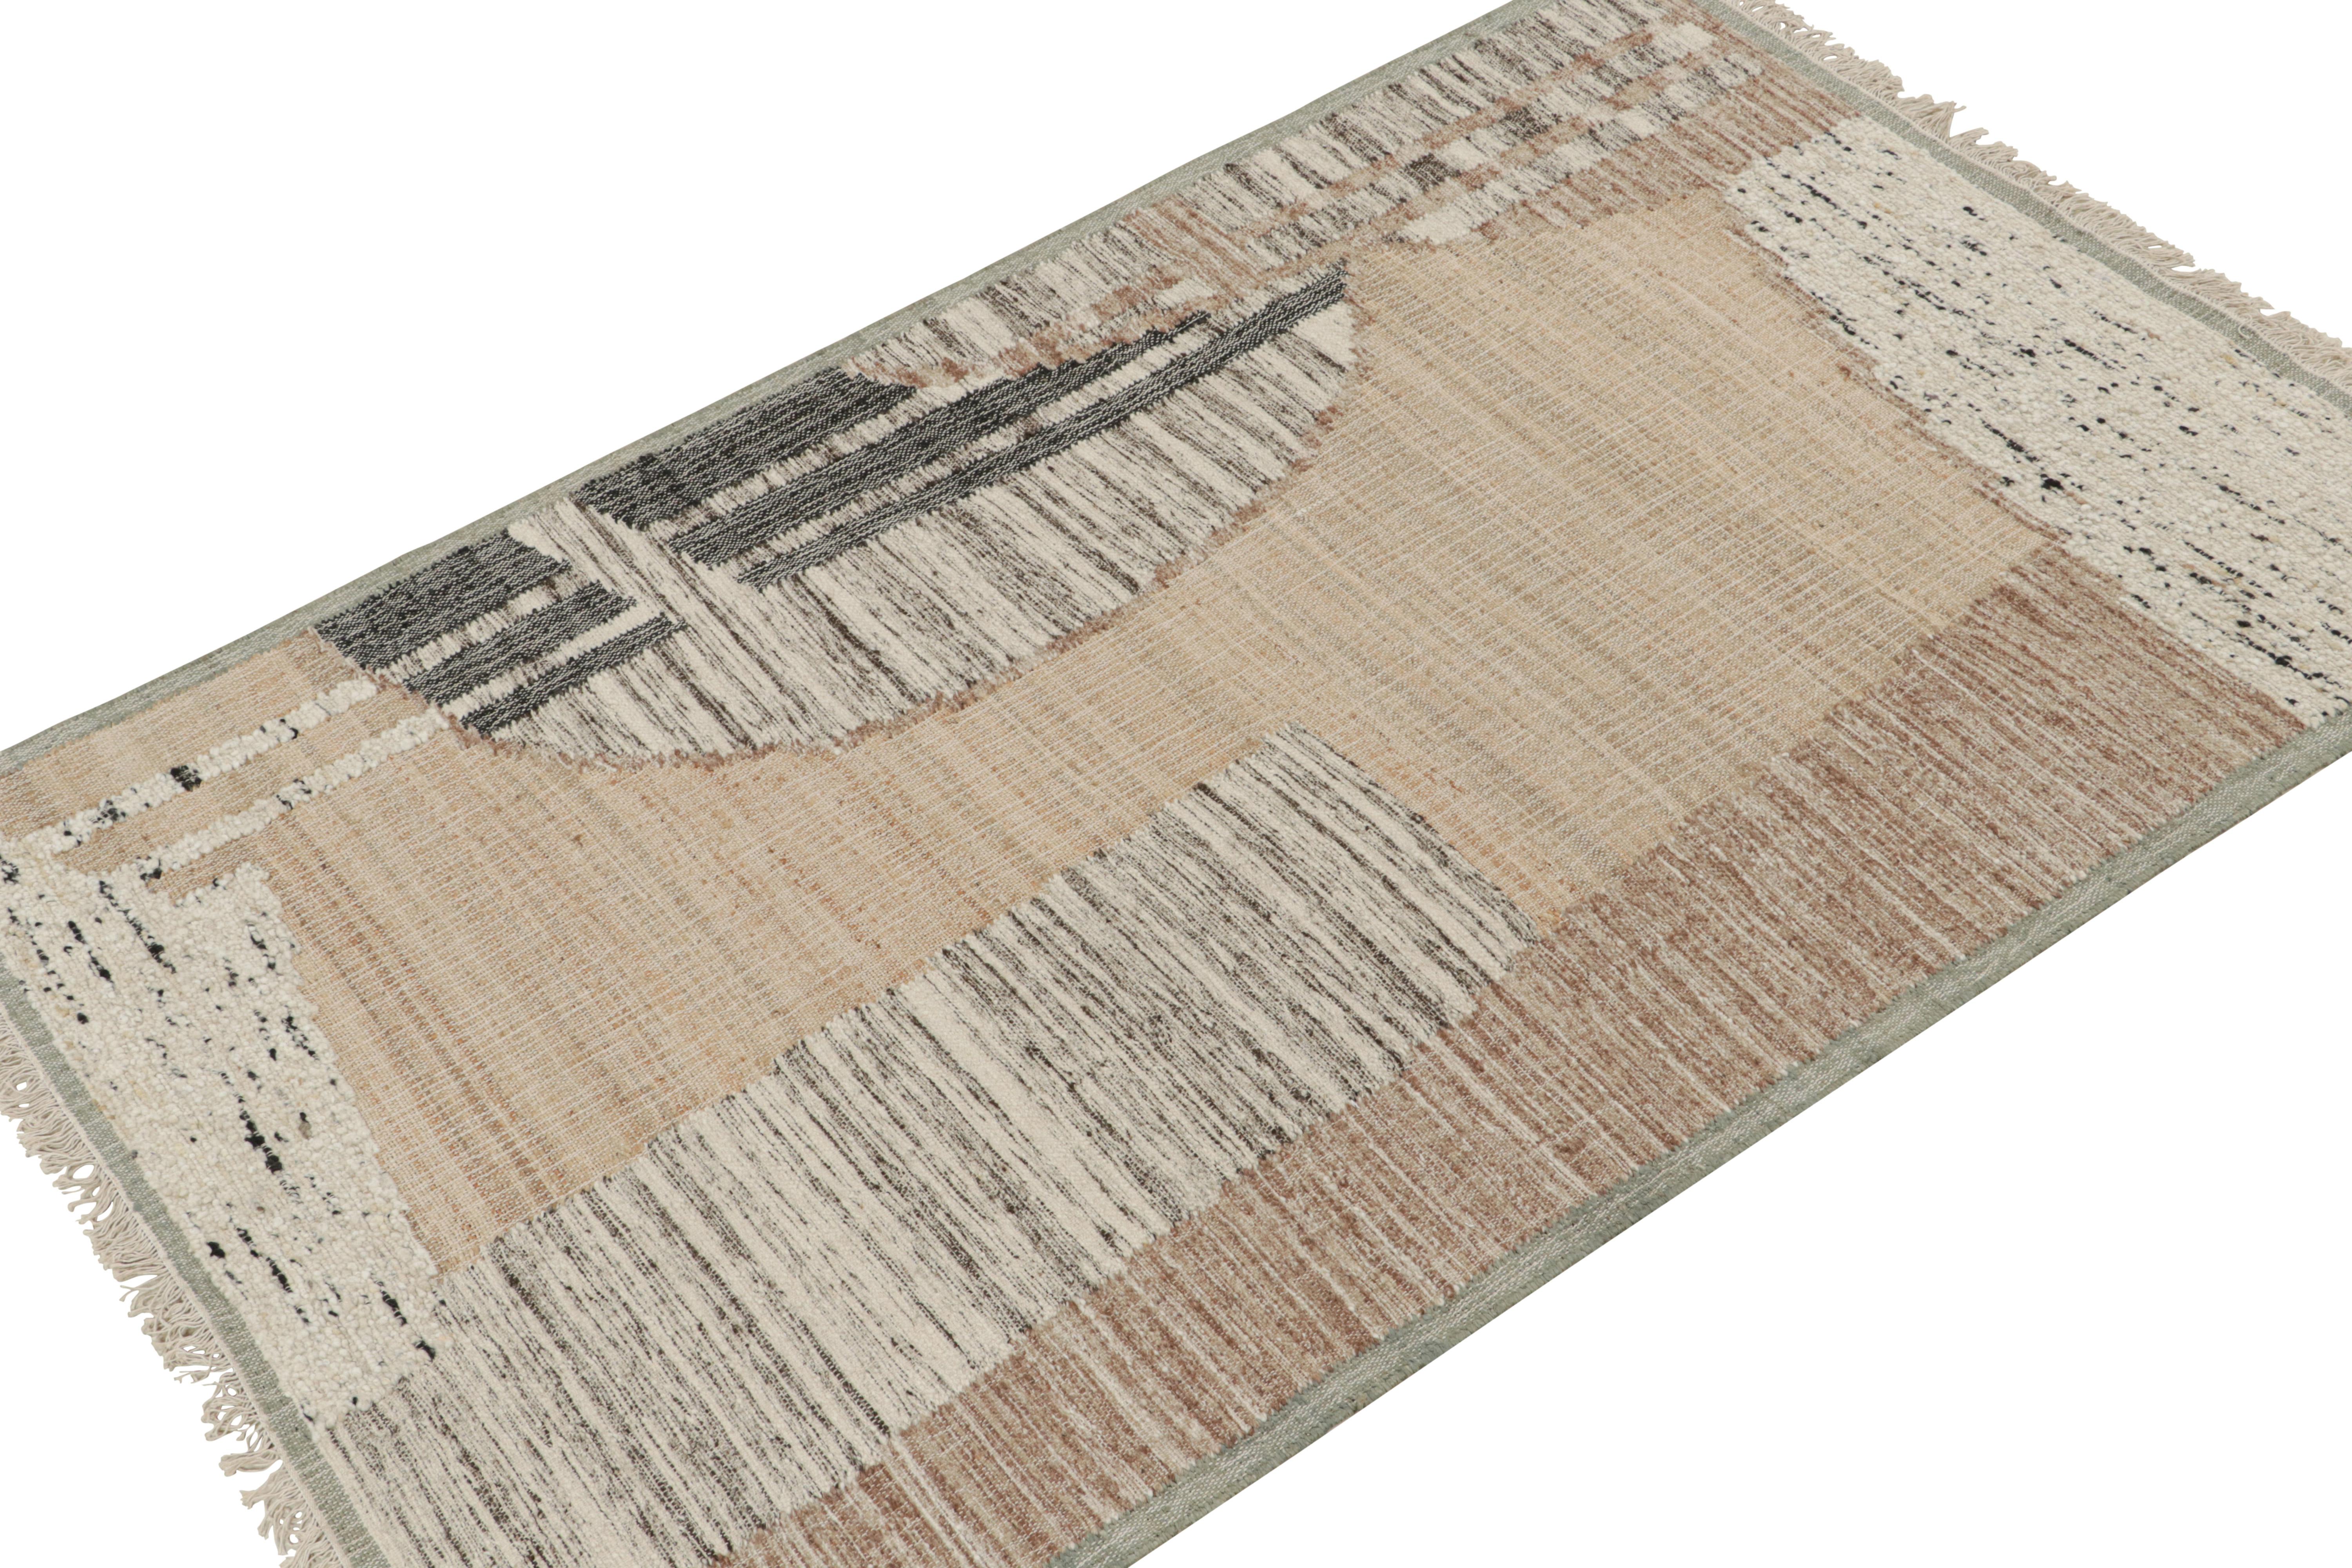 Dieses handgewebte Stück (5x8) aus Wolle und Jute ist ein großartiger Neuzugang in der modernen Flachgewebekollektion von Rug & Kilim.

Über das Design: 

Der Kelimteppich trägt ein abstraktes Muster in Braun, Weiß und Schwarz. Die Ästhetik des